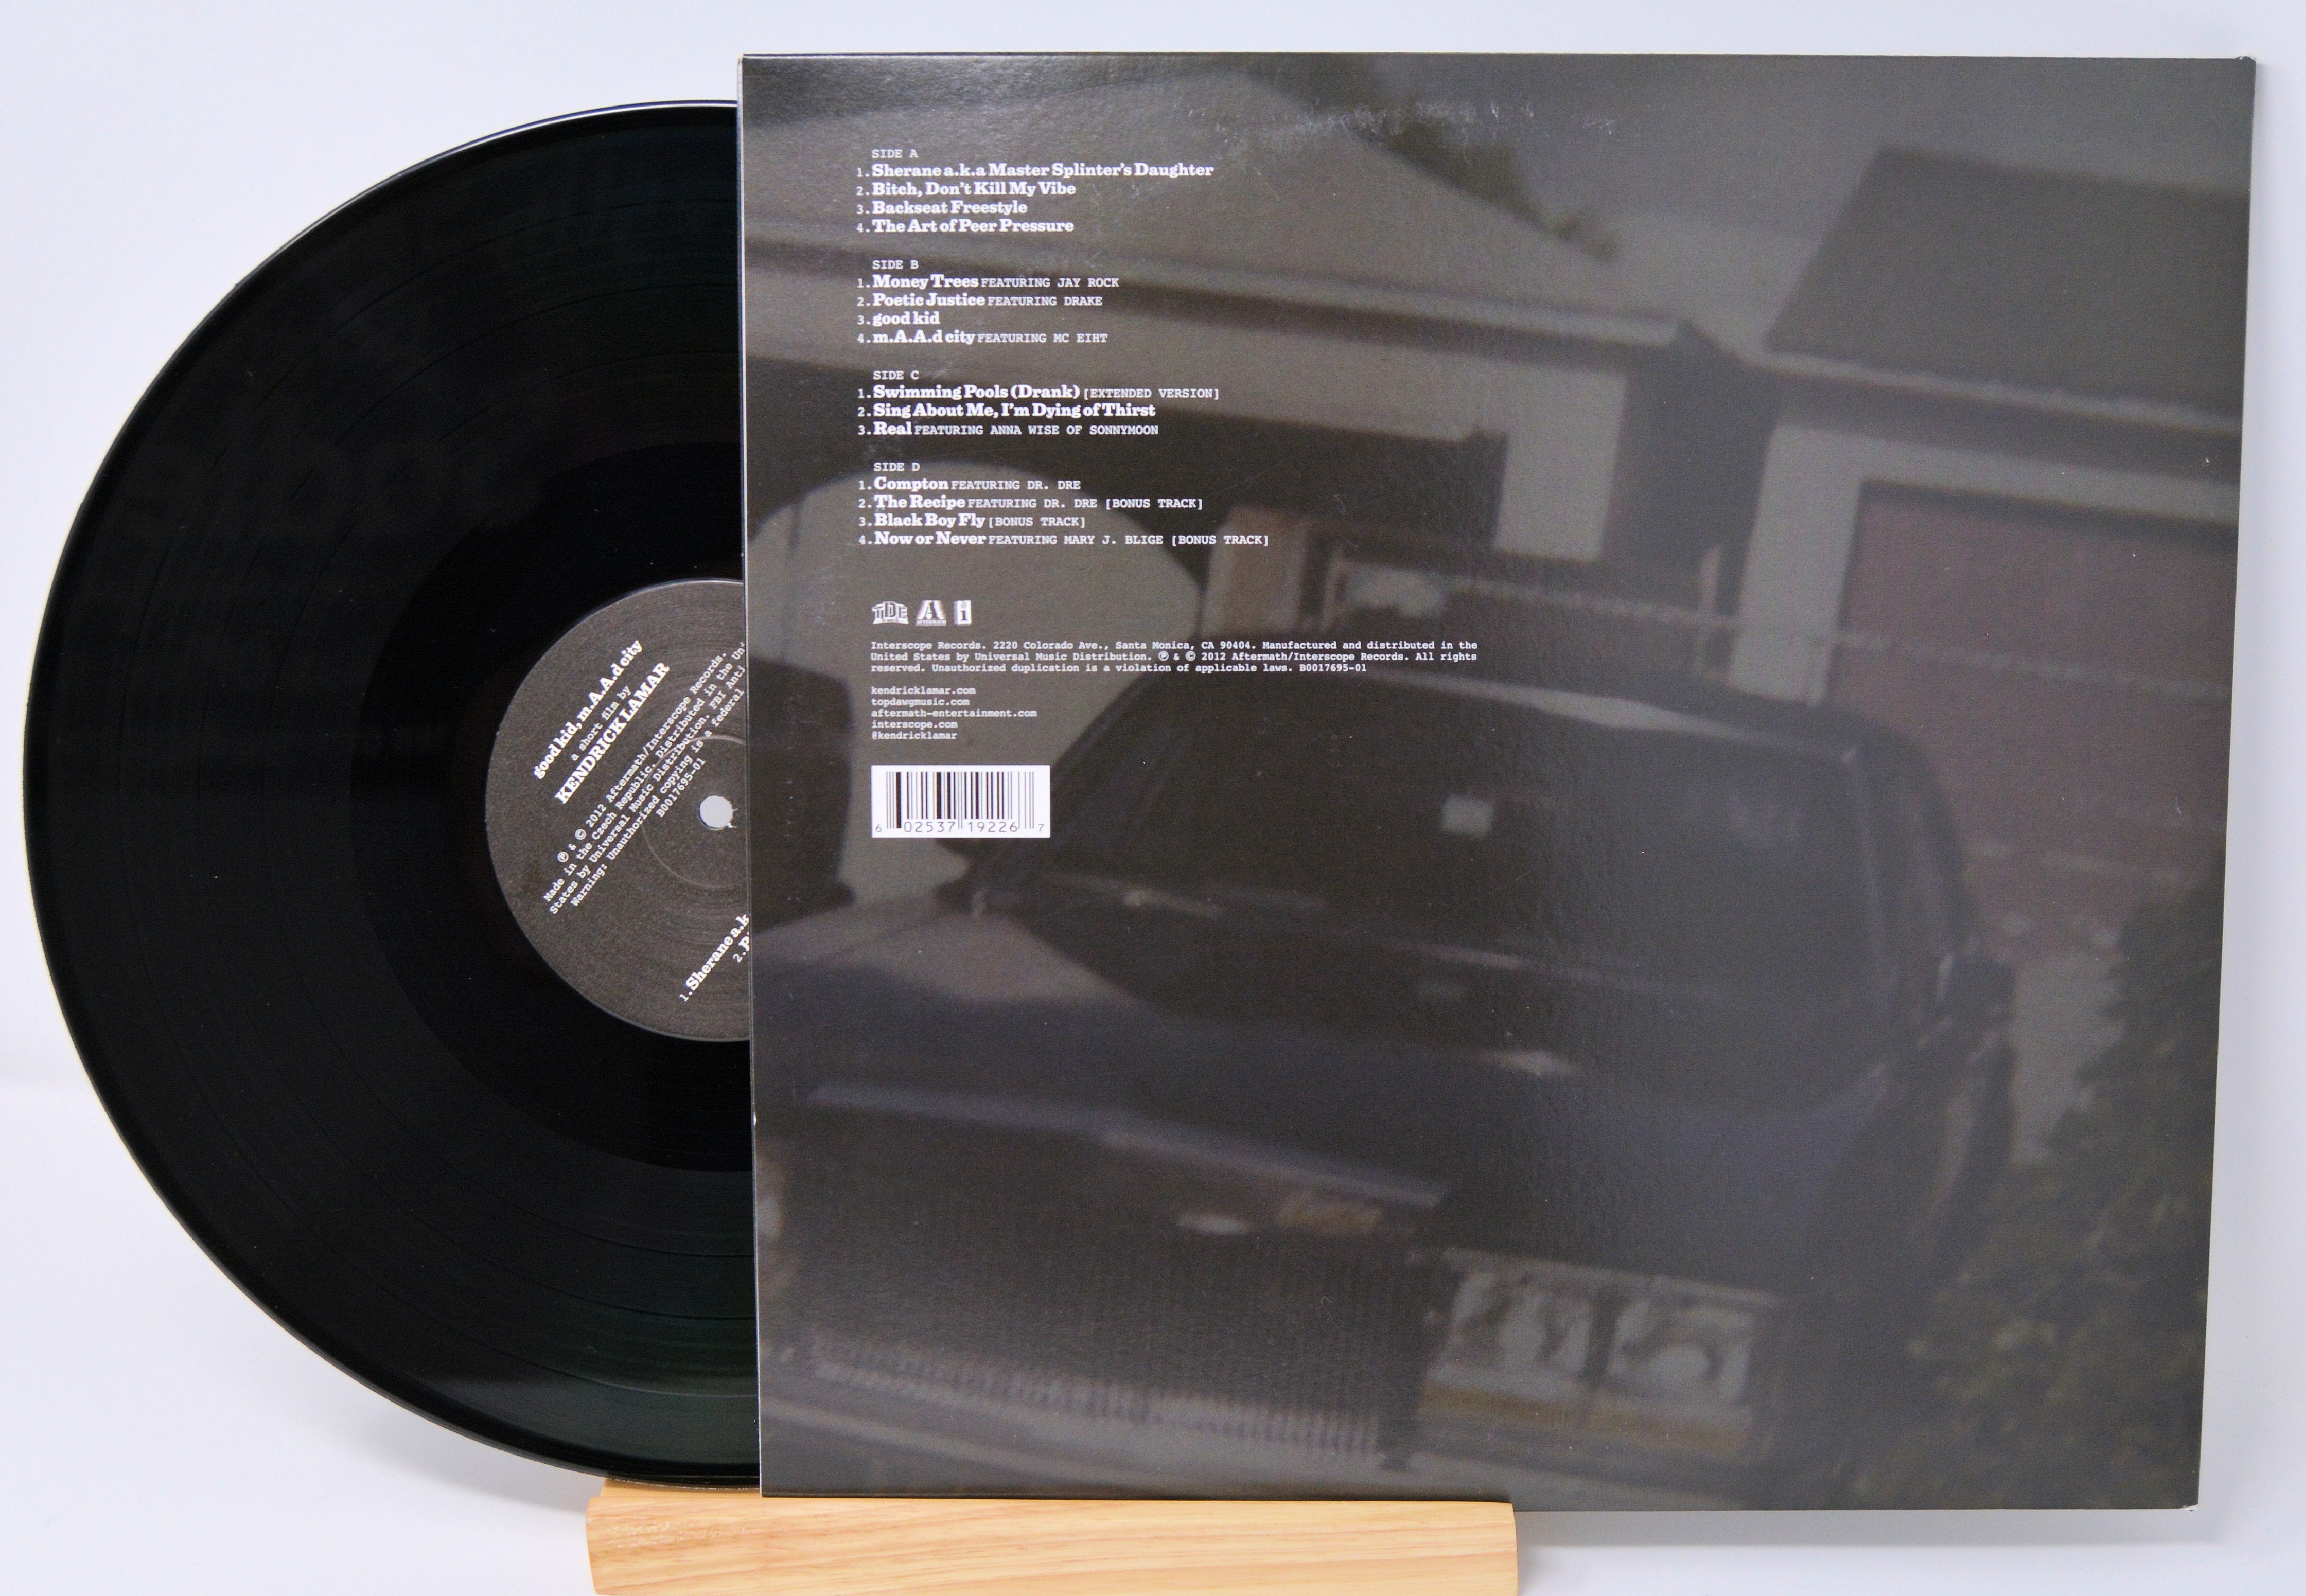 Kendrick Lamar Good Kid, m.A.A.d City (2LP) Vinyl Record